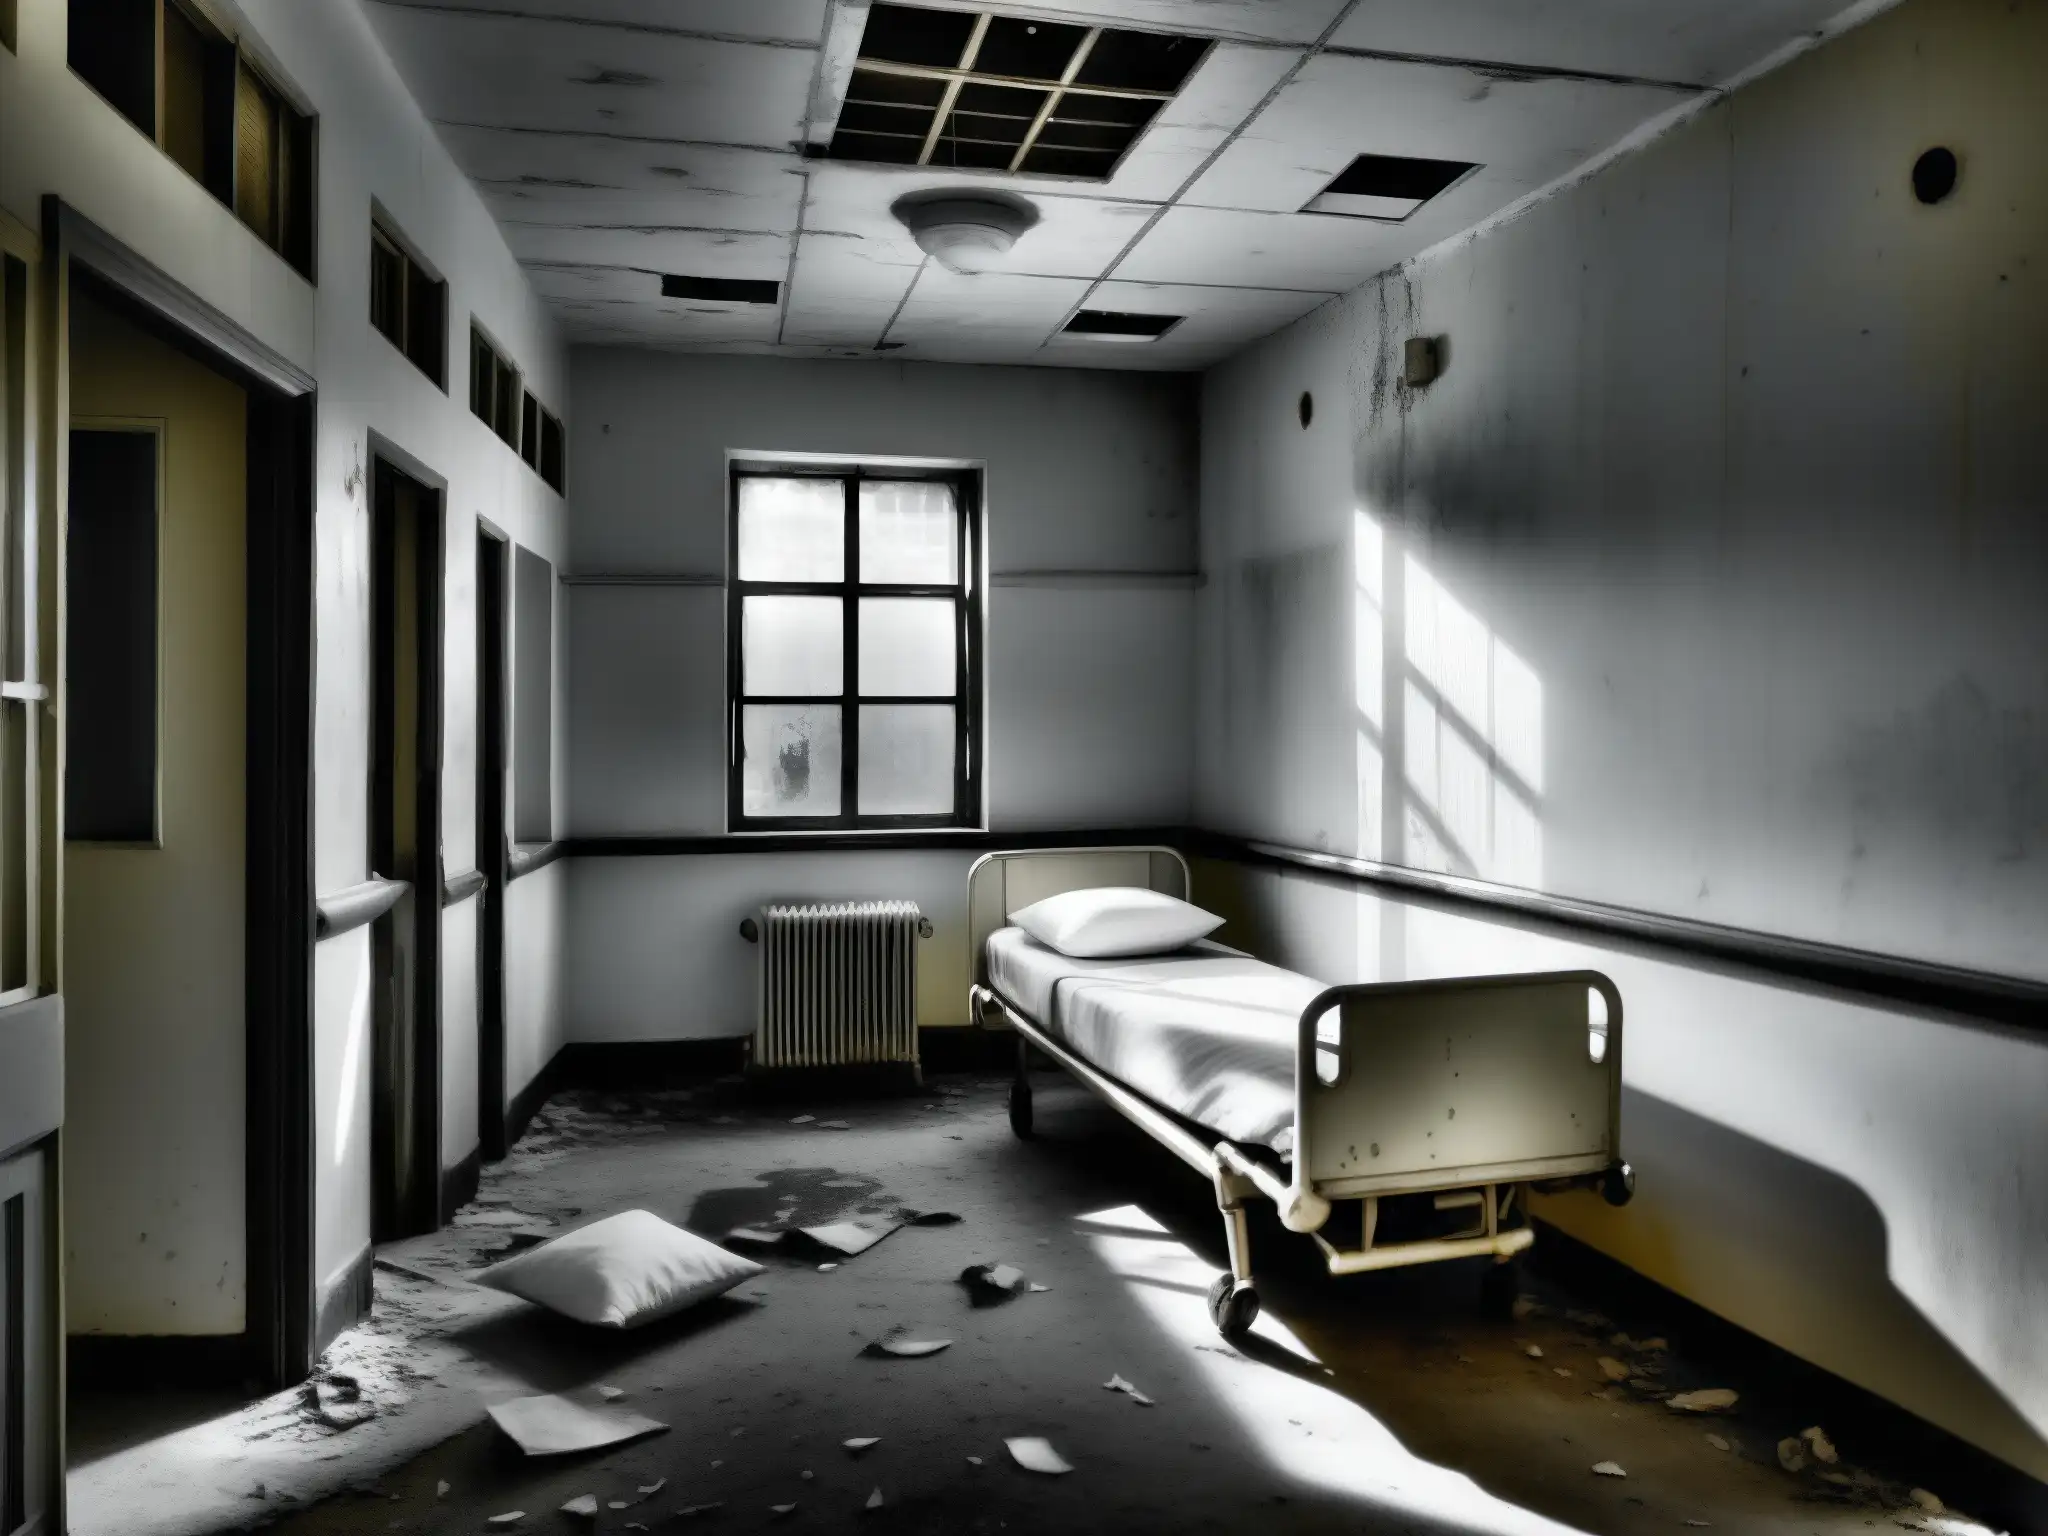 Imagen en blanco y negro de un pasillo abandonado de hospital con pintura descascarada y ventanas rotas